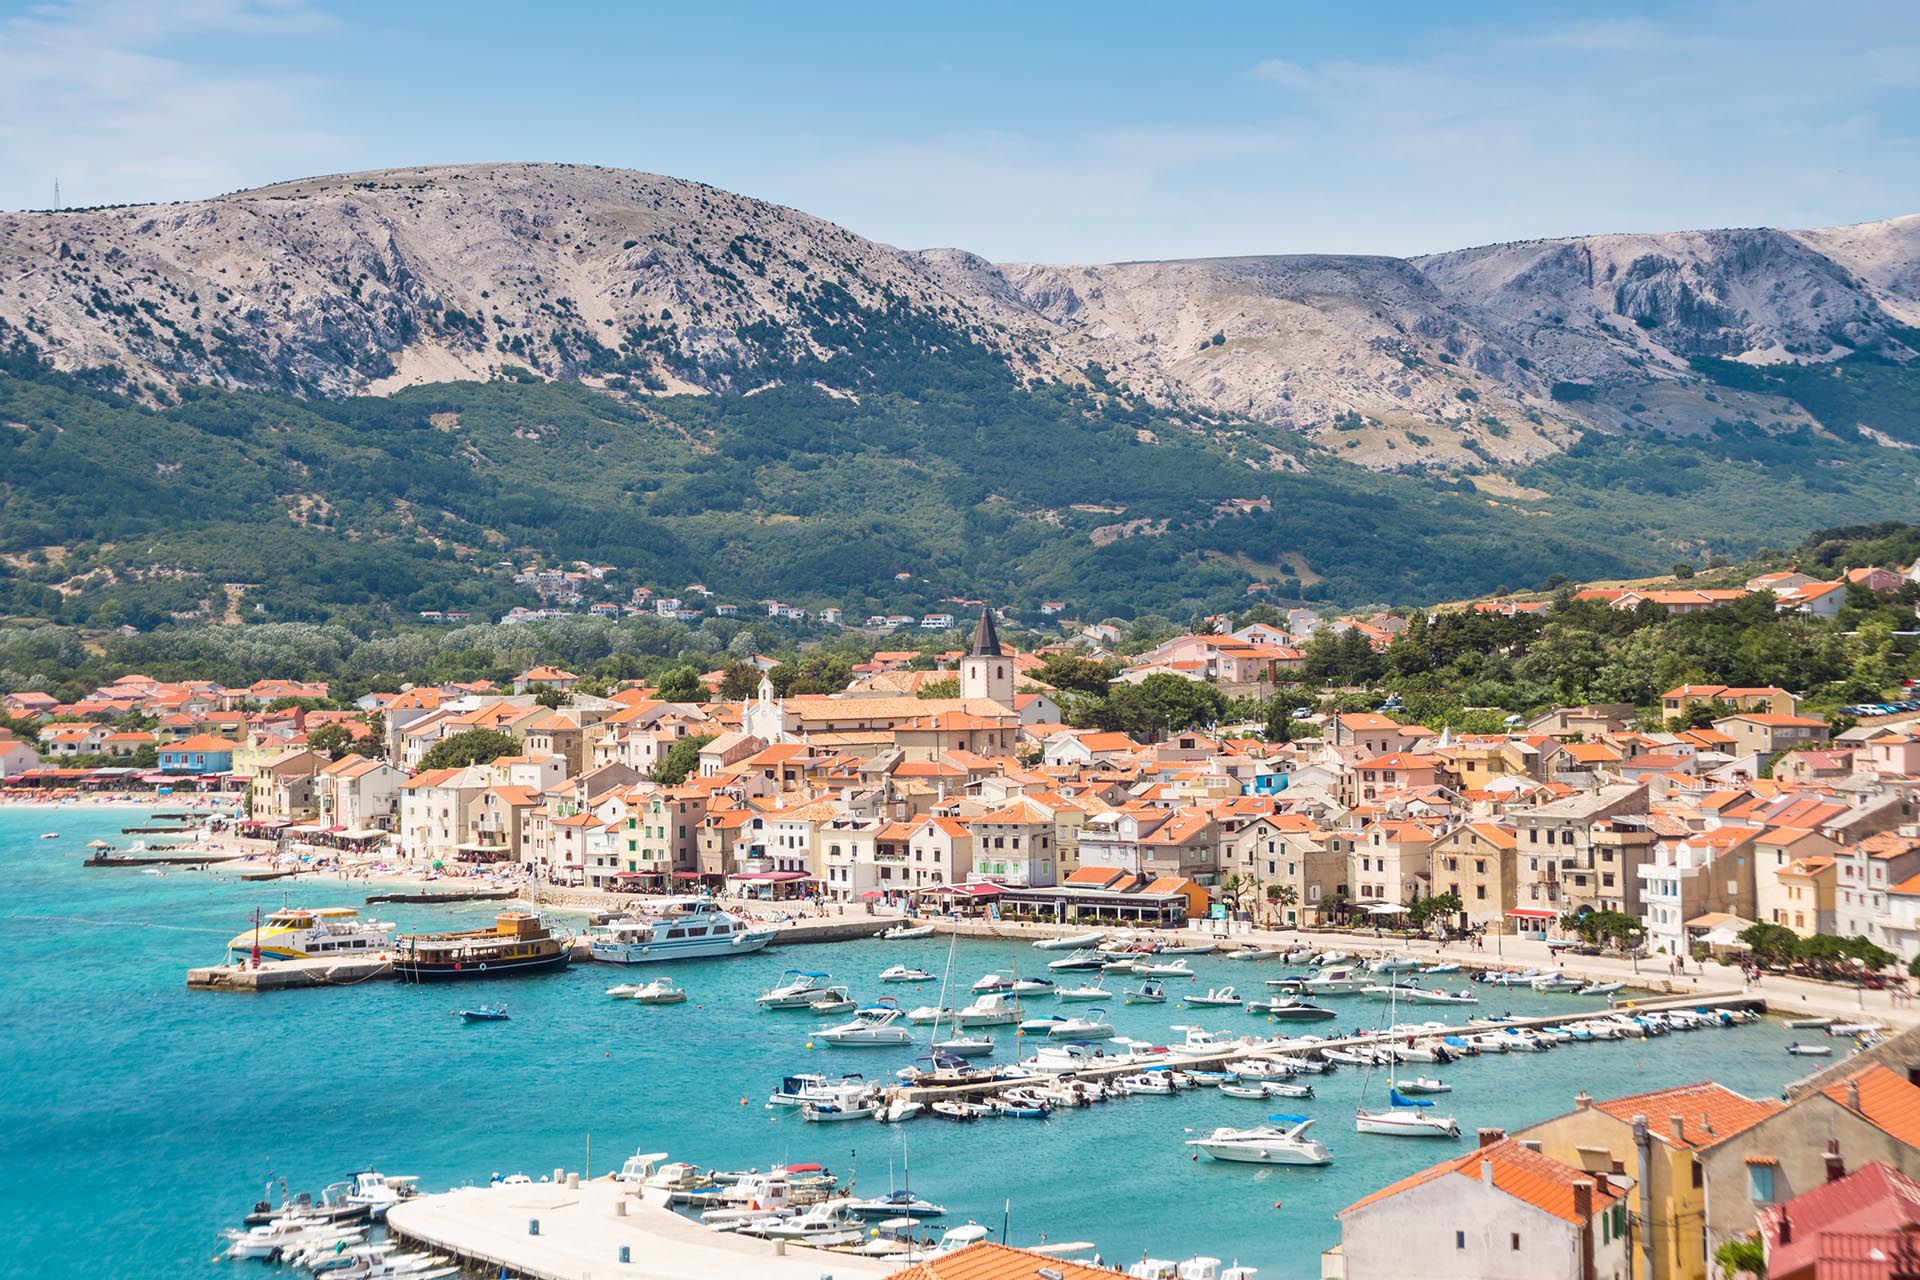 Atrapada entre los enclaves turísticos de Dalmacia e Istria, esta parte menos conocida de la costa croata ha ido forjándose en silencio su fama en lo culinario y en la protección medioambiental a lo largo de la última década. Ahora, el golfo del Carnaro, ya está listo para salir a escena con su ciudad principal, la portuaria Rijeka, como Capital Europea de la Cultura en el 2020